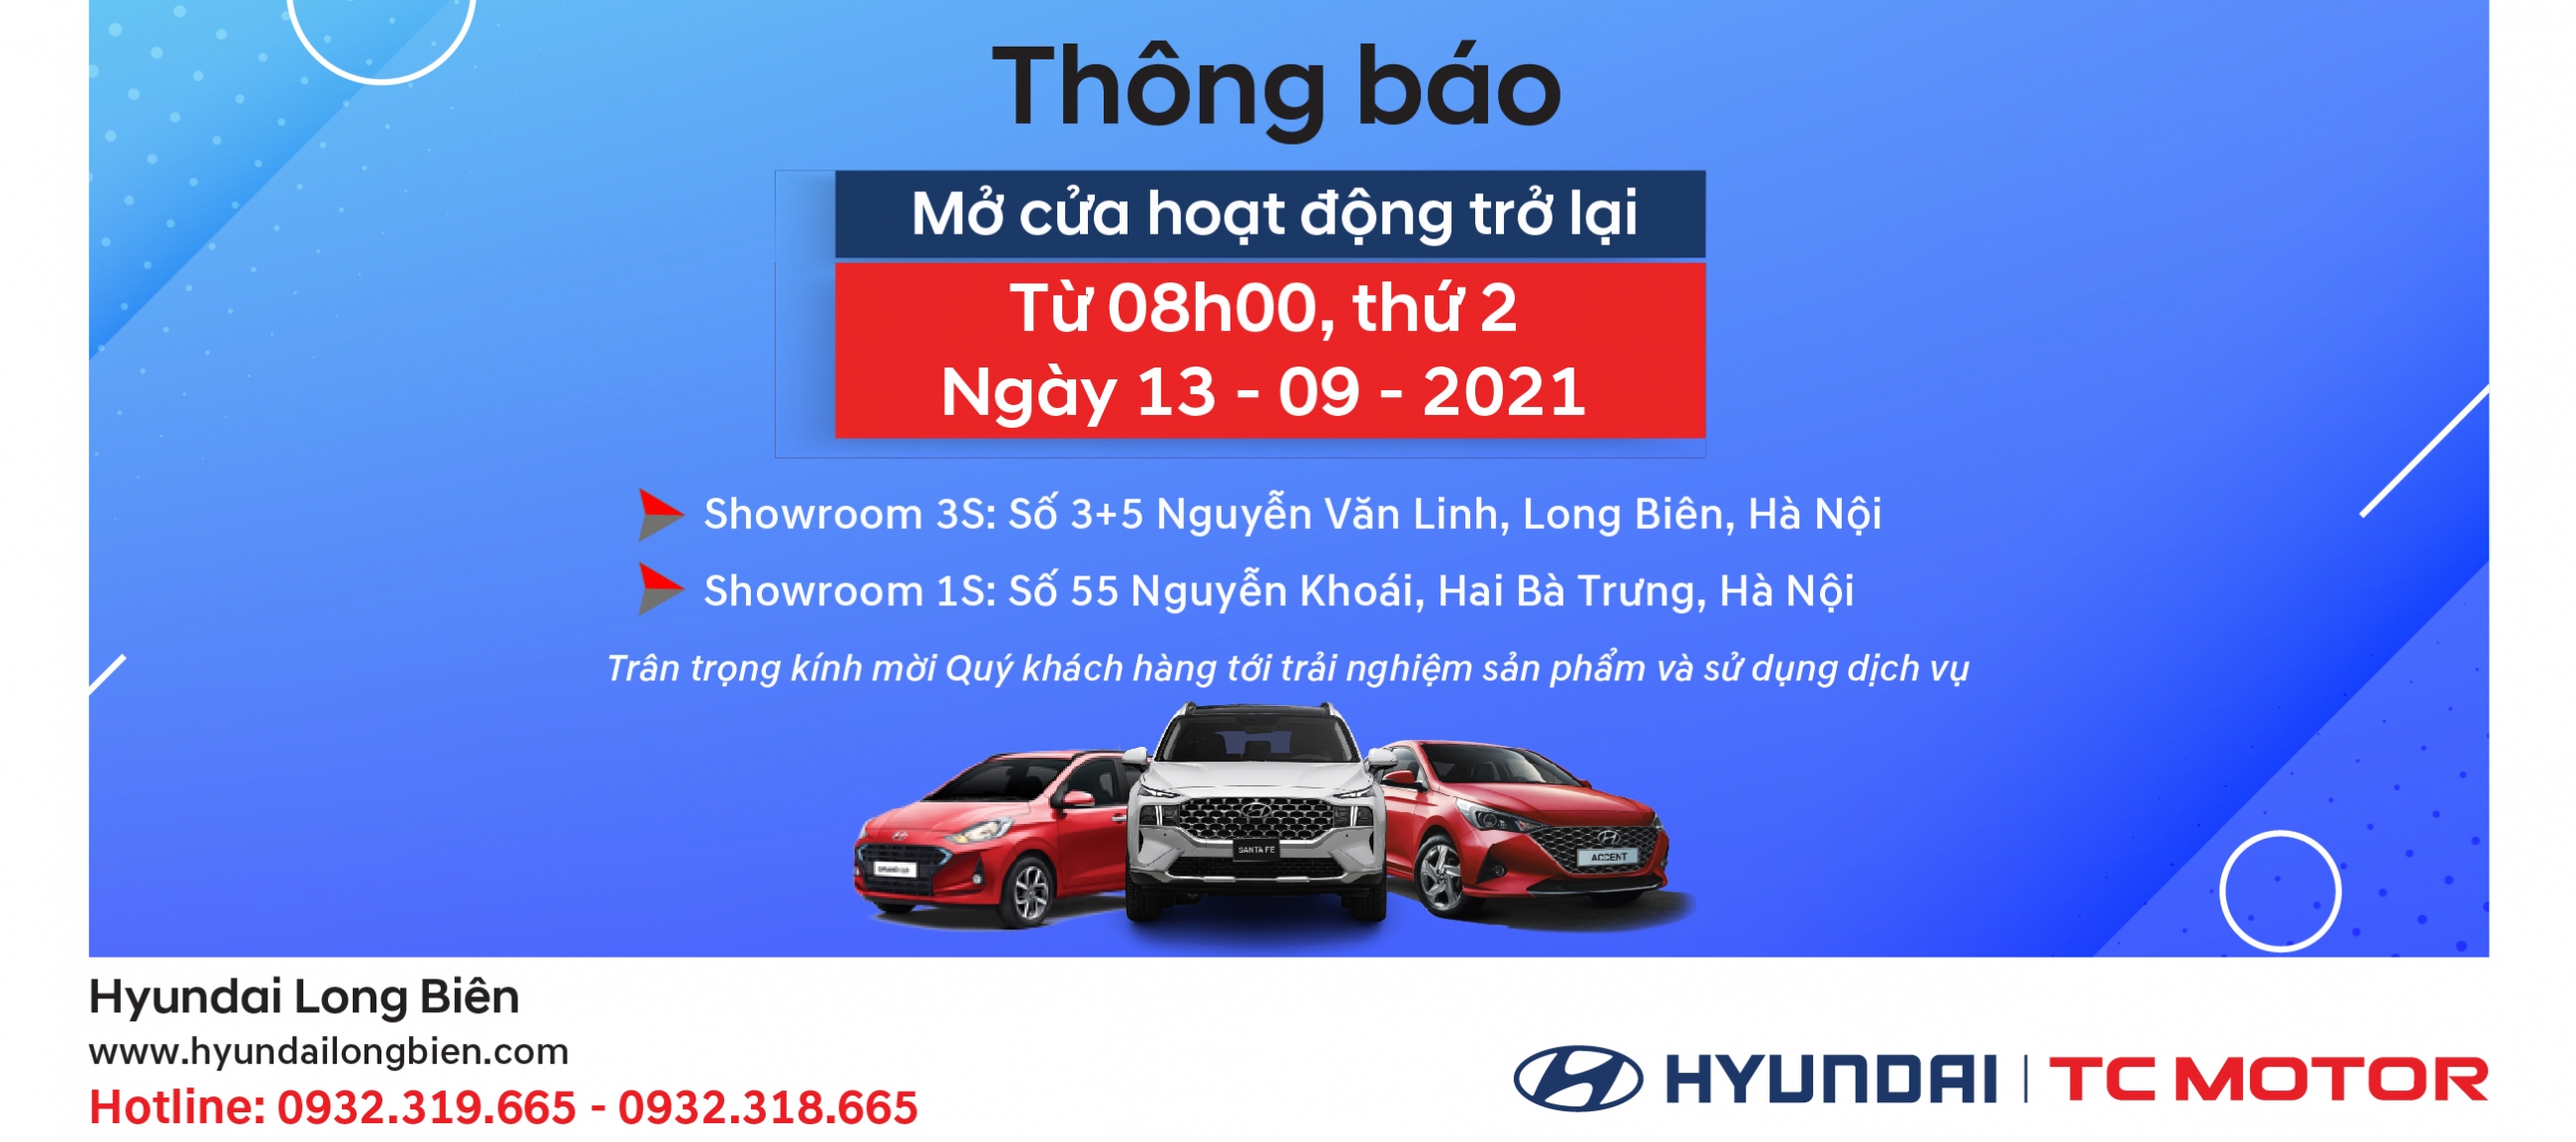 Hyundai Long Biên thông báo lịch làm việc trở lại